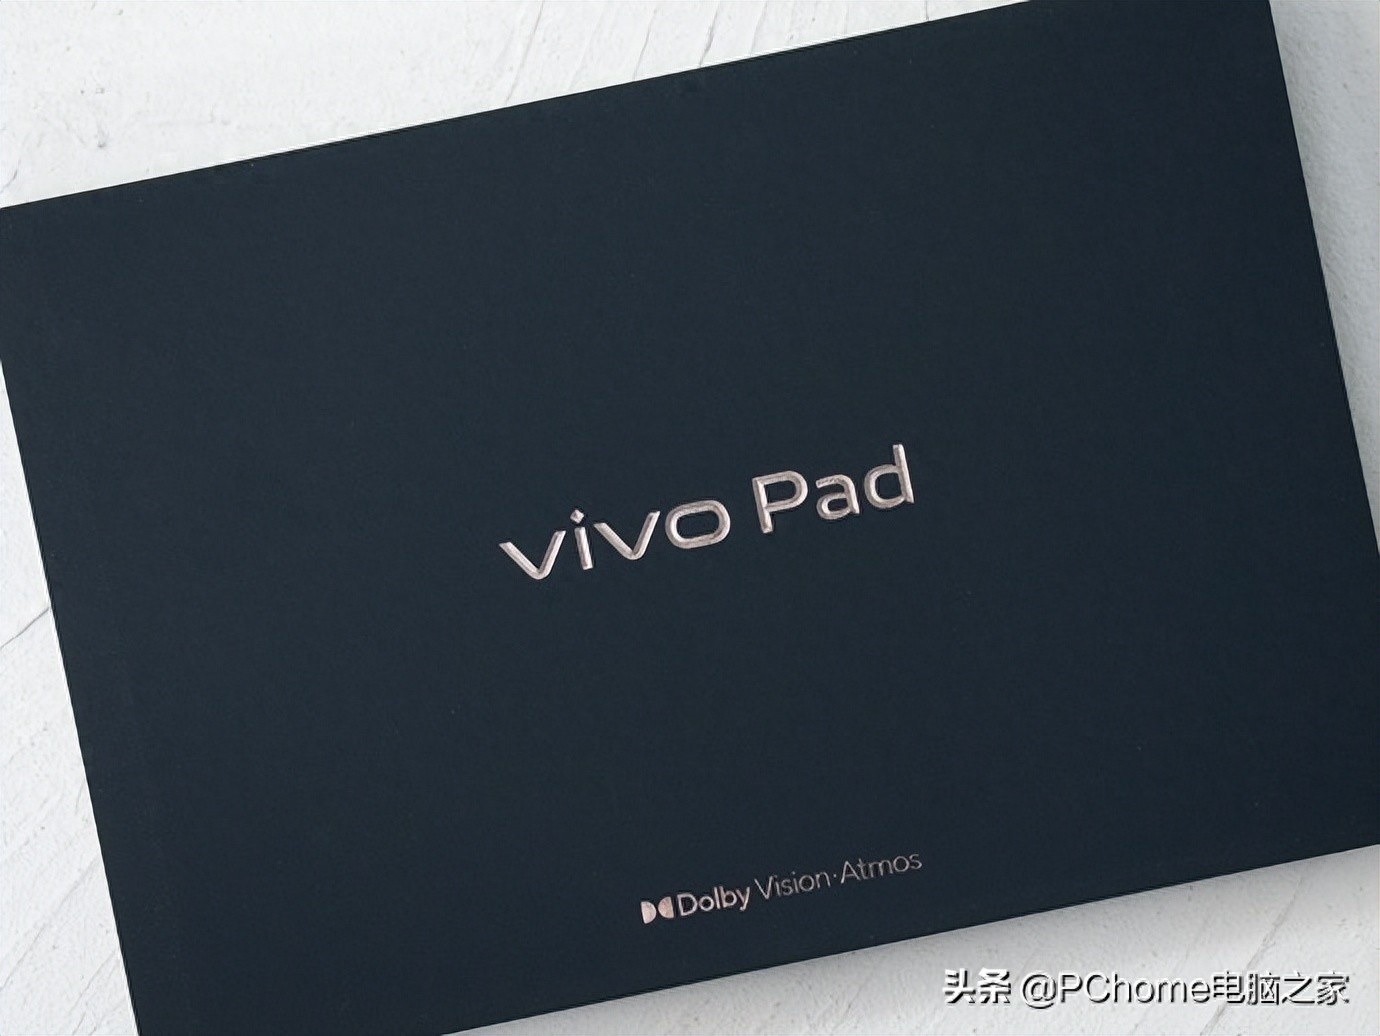 传闻许久的vivo首款平板电脑产品—vivo Pad终于正式发布了。作为vivo构建自家IoT生态的重要产品，vivo Pad是极为重要的一环，vivo也是众多品牌中相对较晚推出平板设备的品牌。那么究竟“